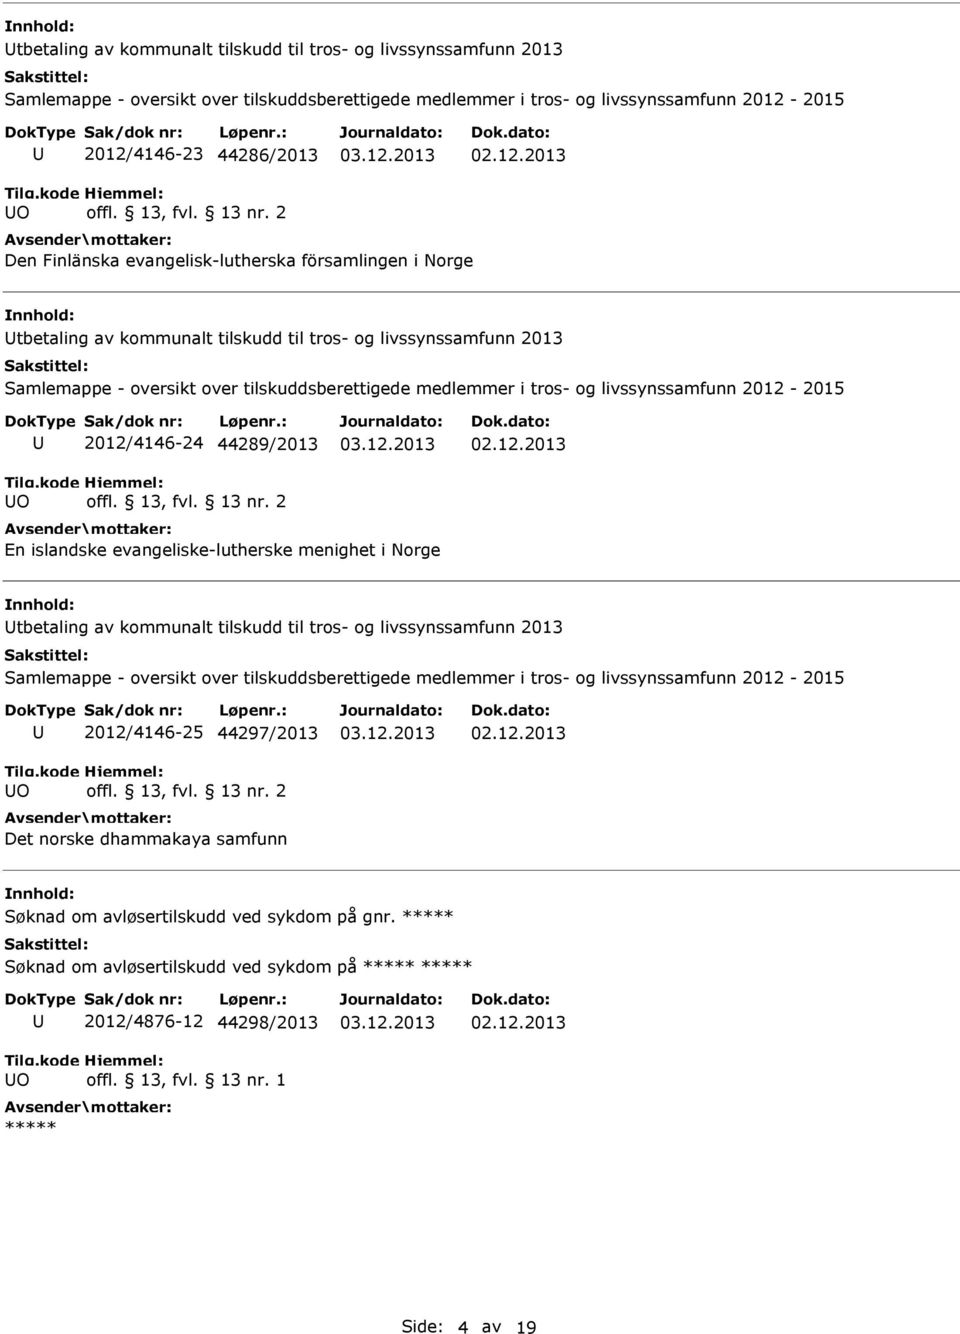 menighet i Norge tbetaling av kommunalt tilskudd til tros- og livssynssamfunn 2013 O 2012/4146-25 44297/2013 Det norske dhammakaya samfunn